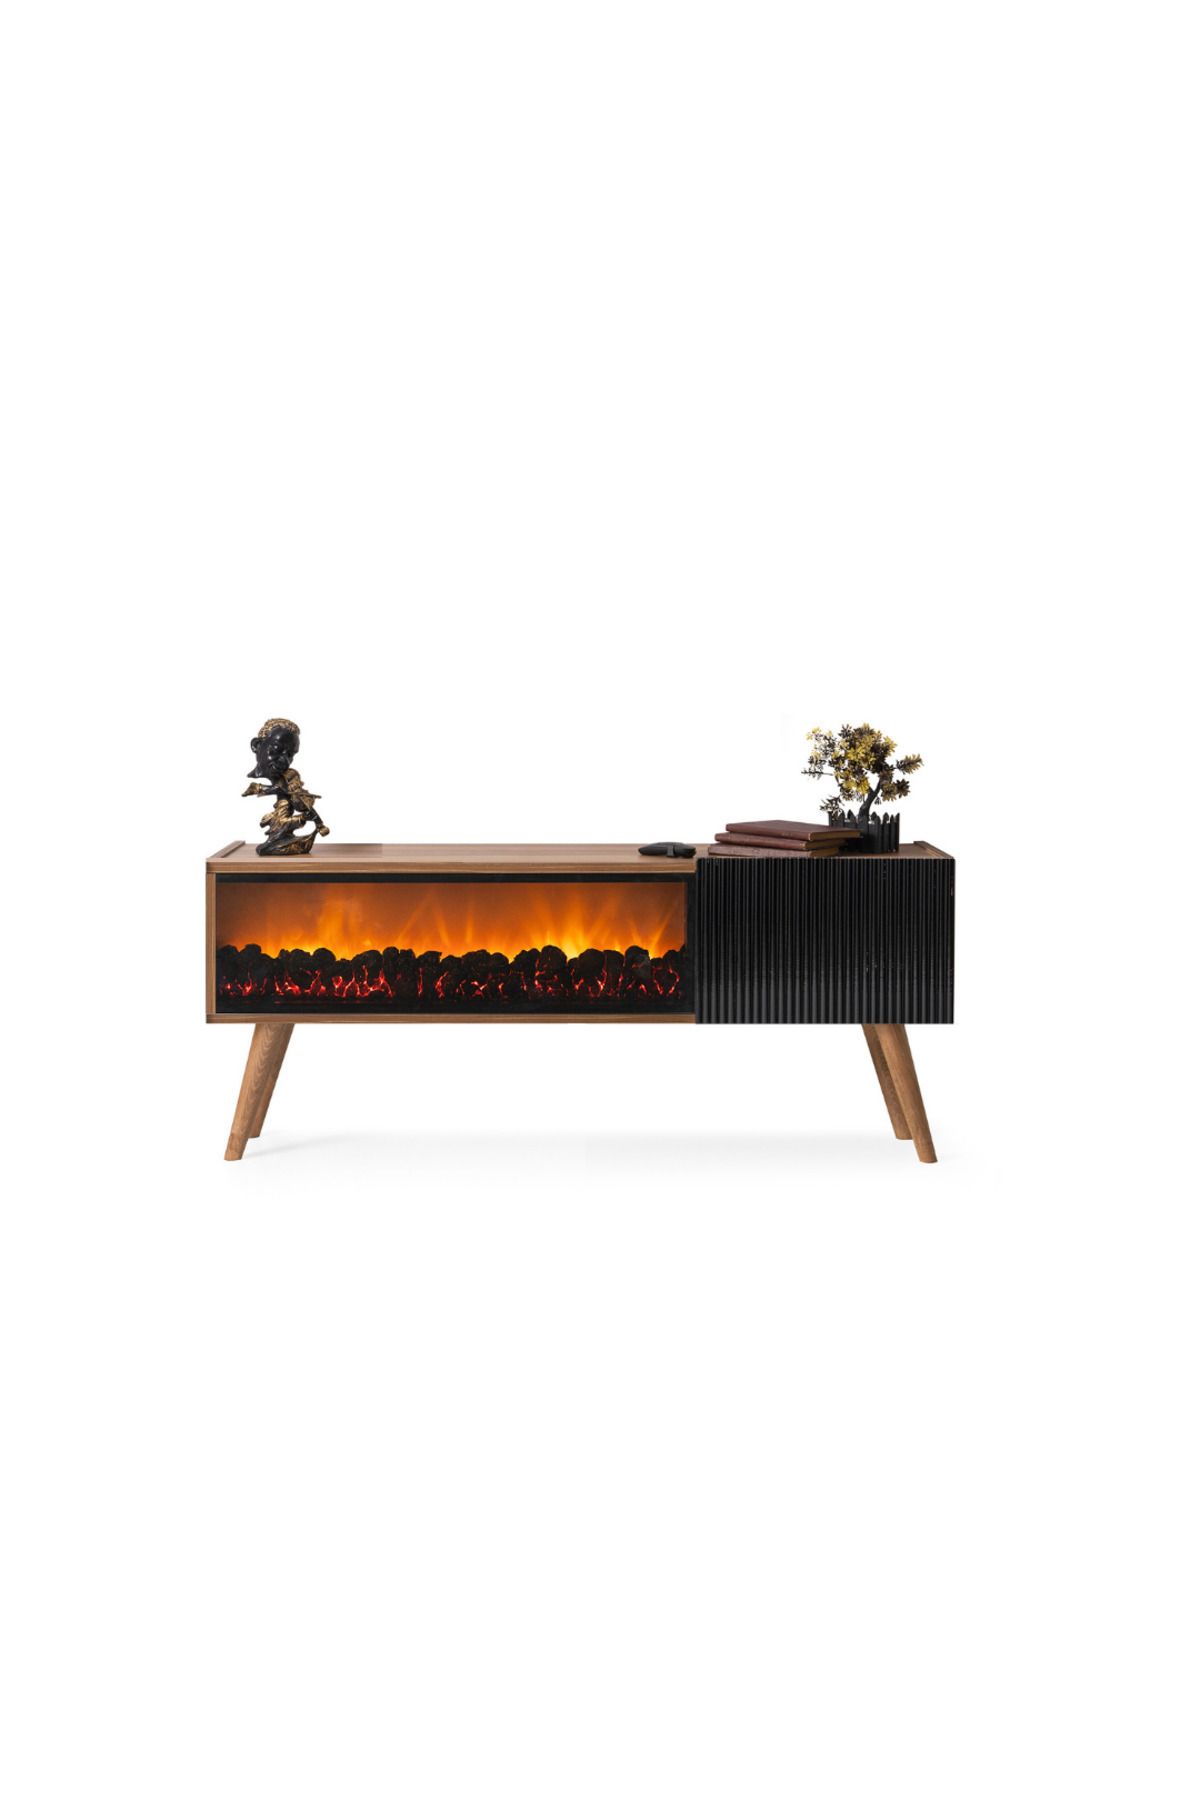 Dodo İç Mimarlık & Mobilya Tasarım Mini Venice Şömineli Tv Ünitesi Ceviz Siyah 130 cm